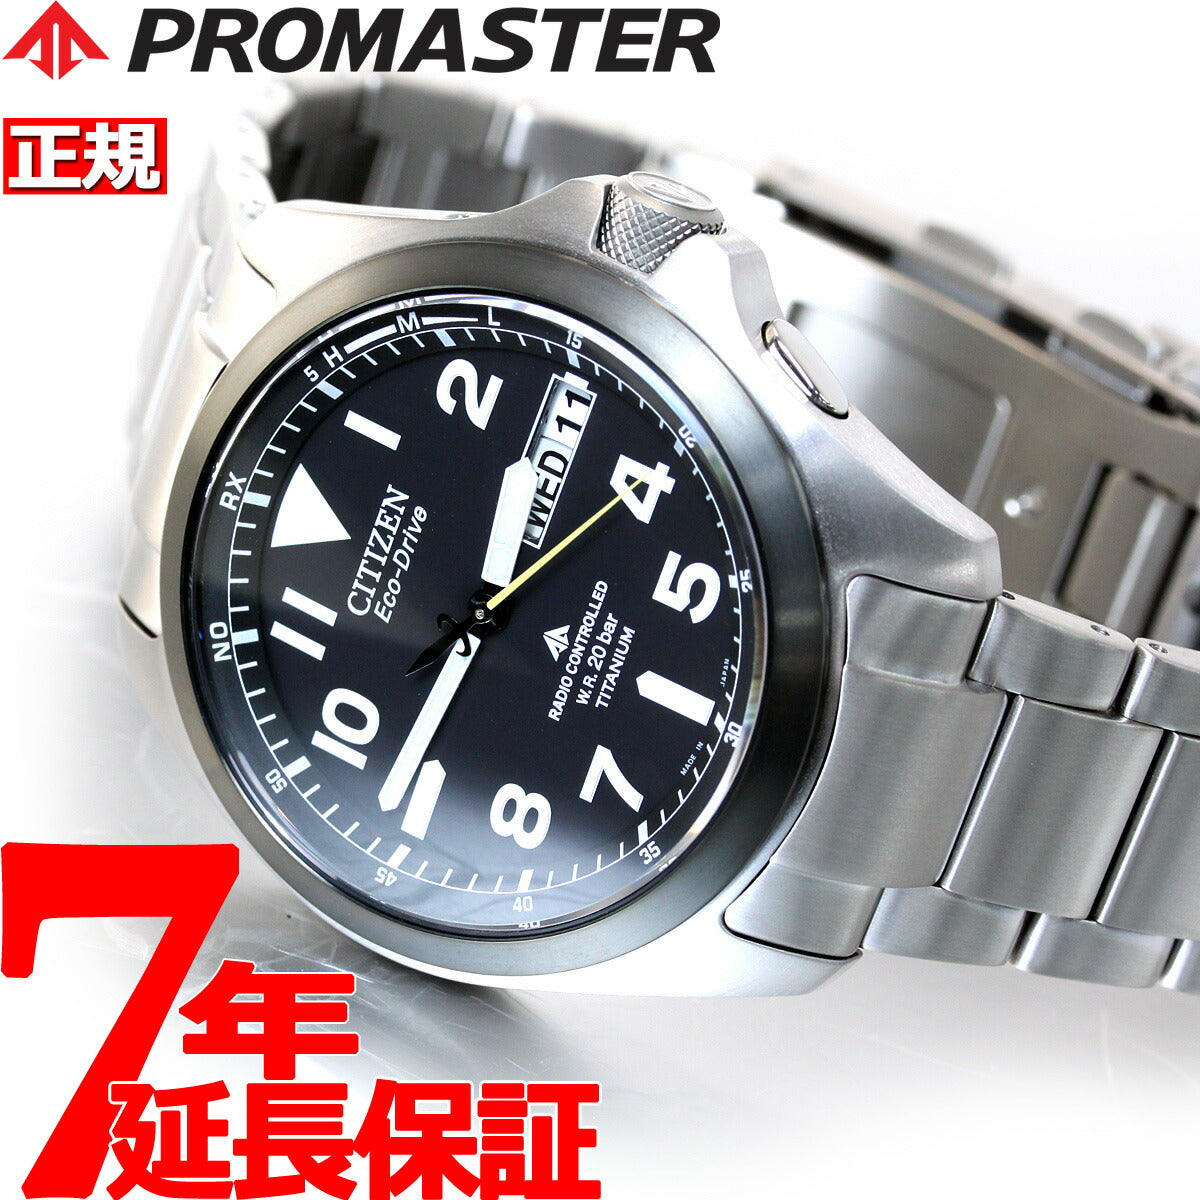 シチズン プロマスター エコドライブ 電波時計 腕時計 ランド PMD56-2952 CITIZEN PROMASTER